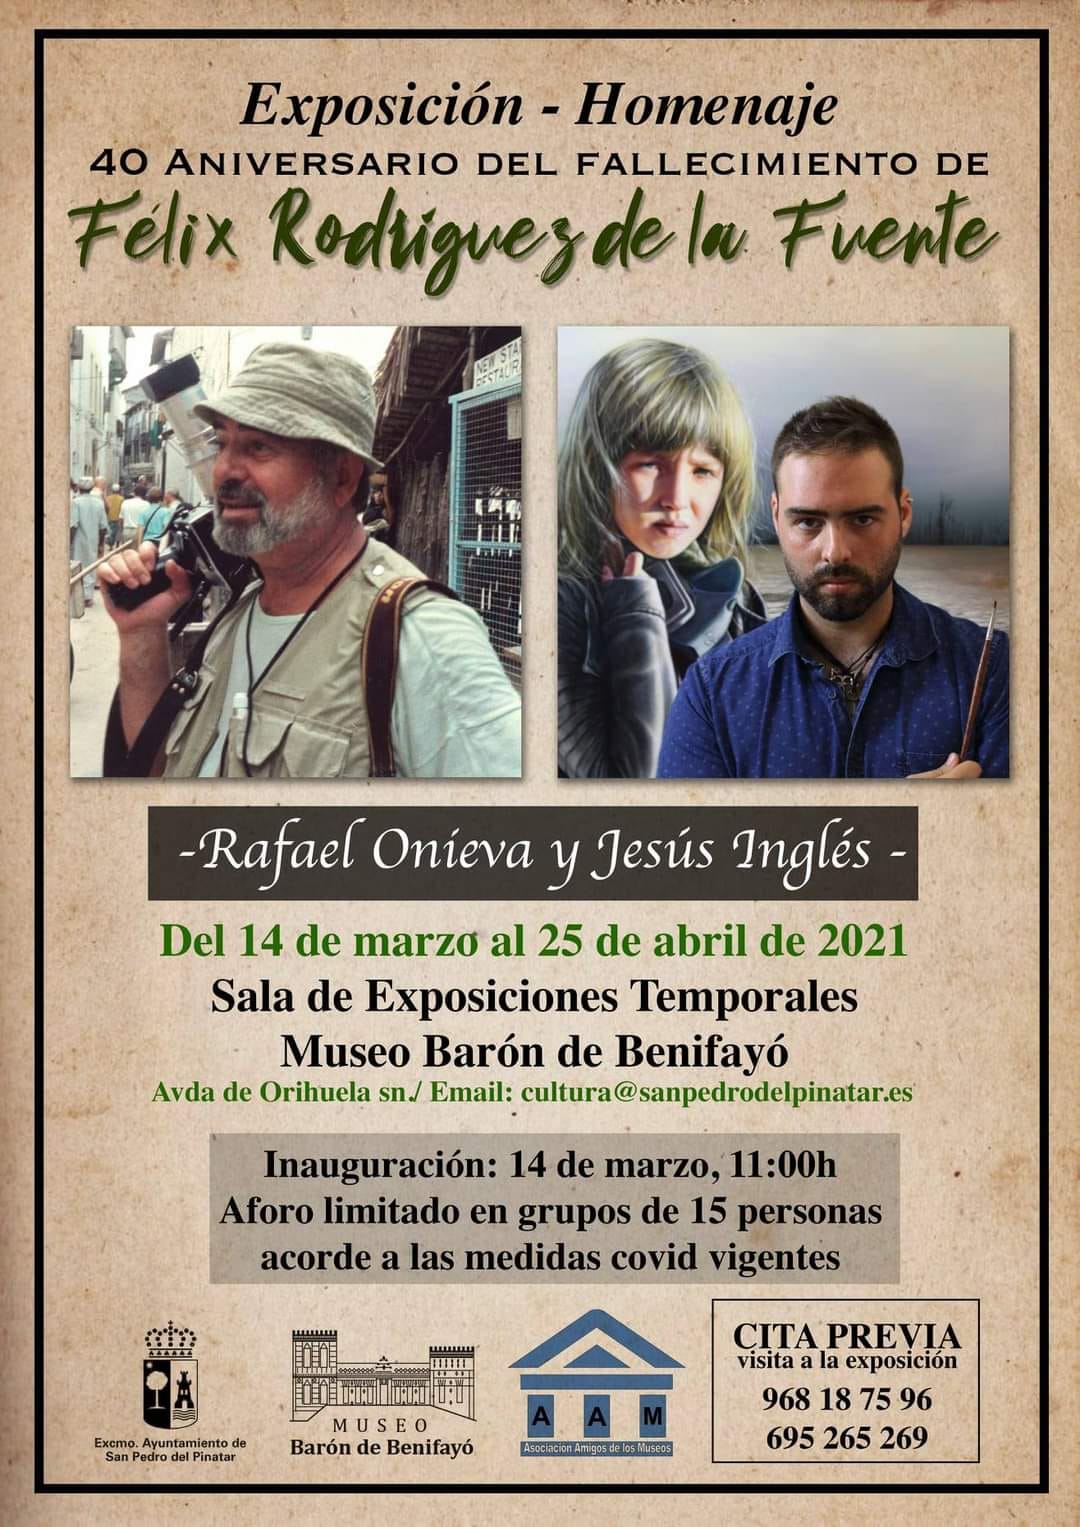 Cartel de la exposición - homenaje a Félix Rodríguez de la Fuente